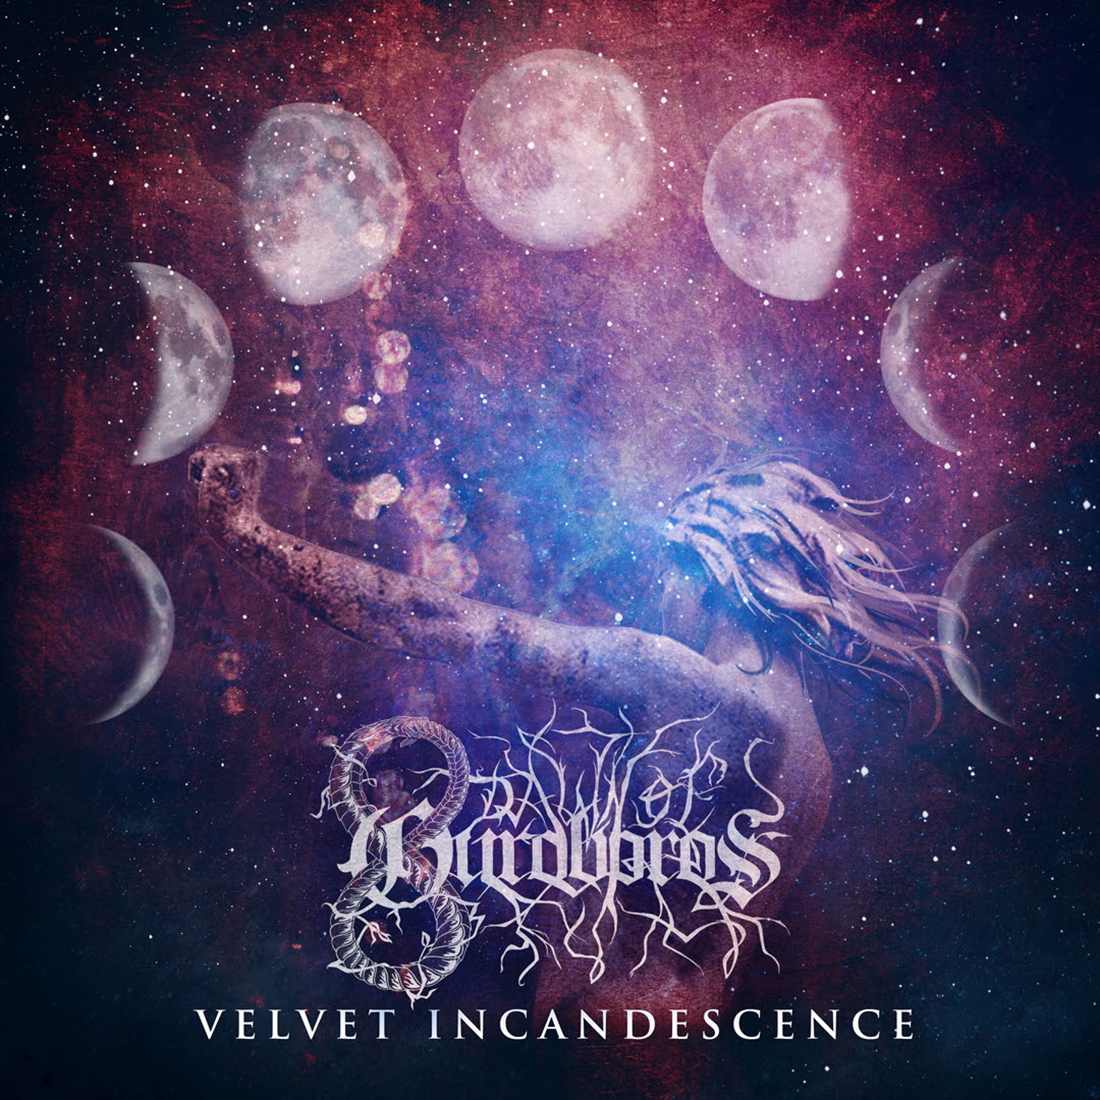 Dawn of Ouroborous “Velvet Incandescence” Album Artwork